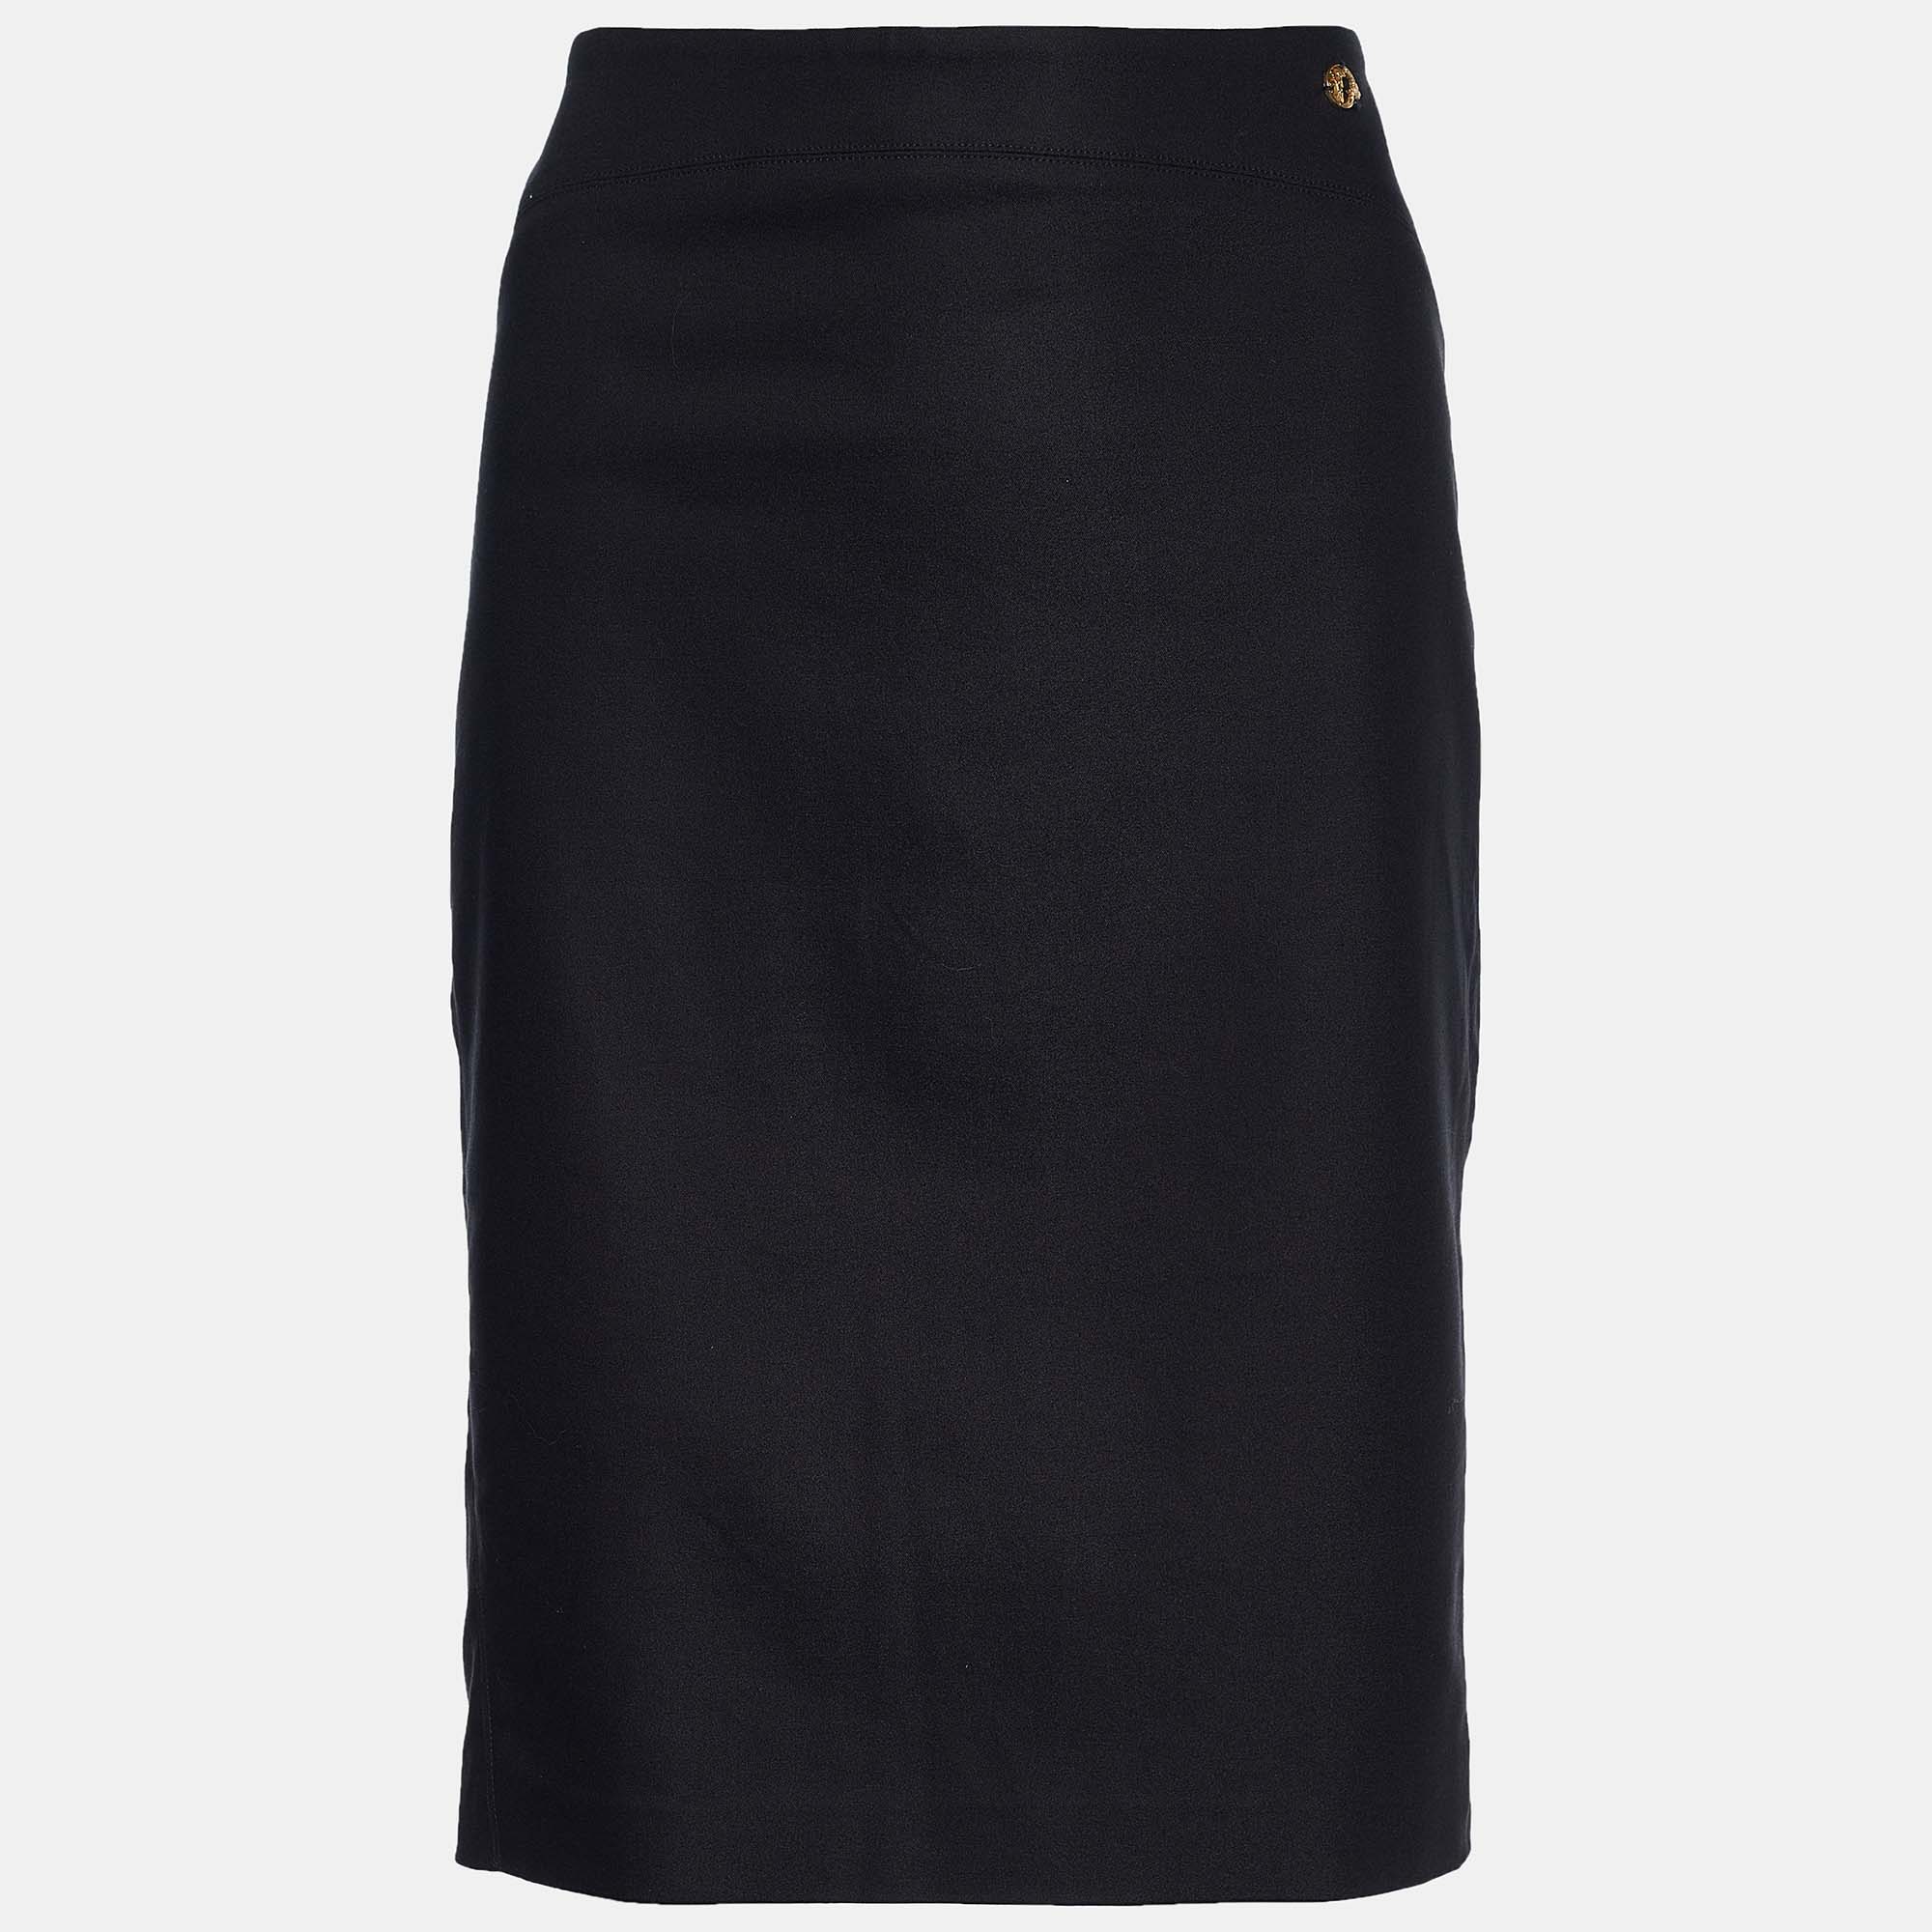 Versace Collection Black Cotton Knit Pencil Skirt L